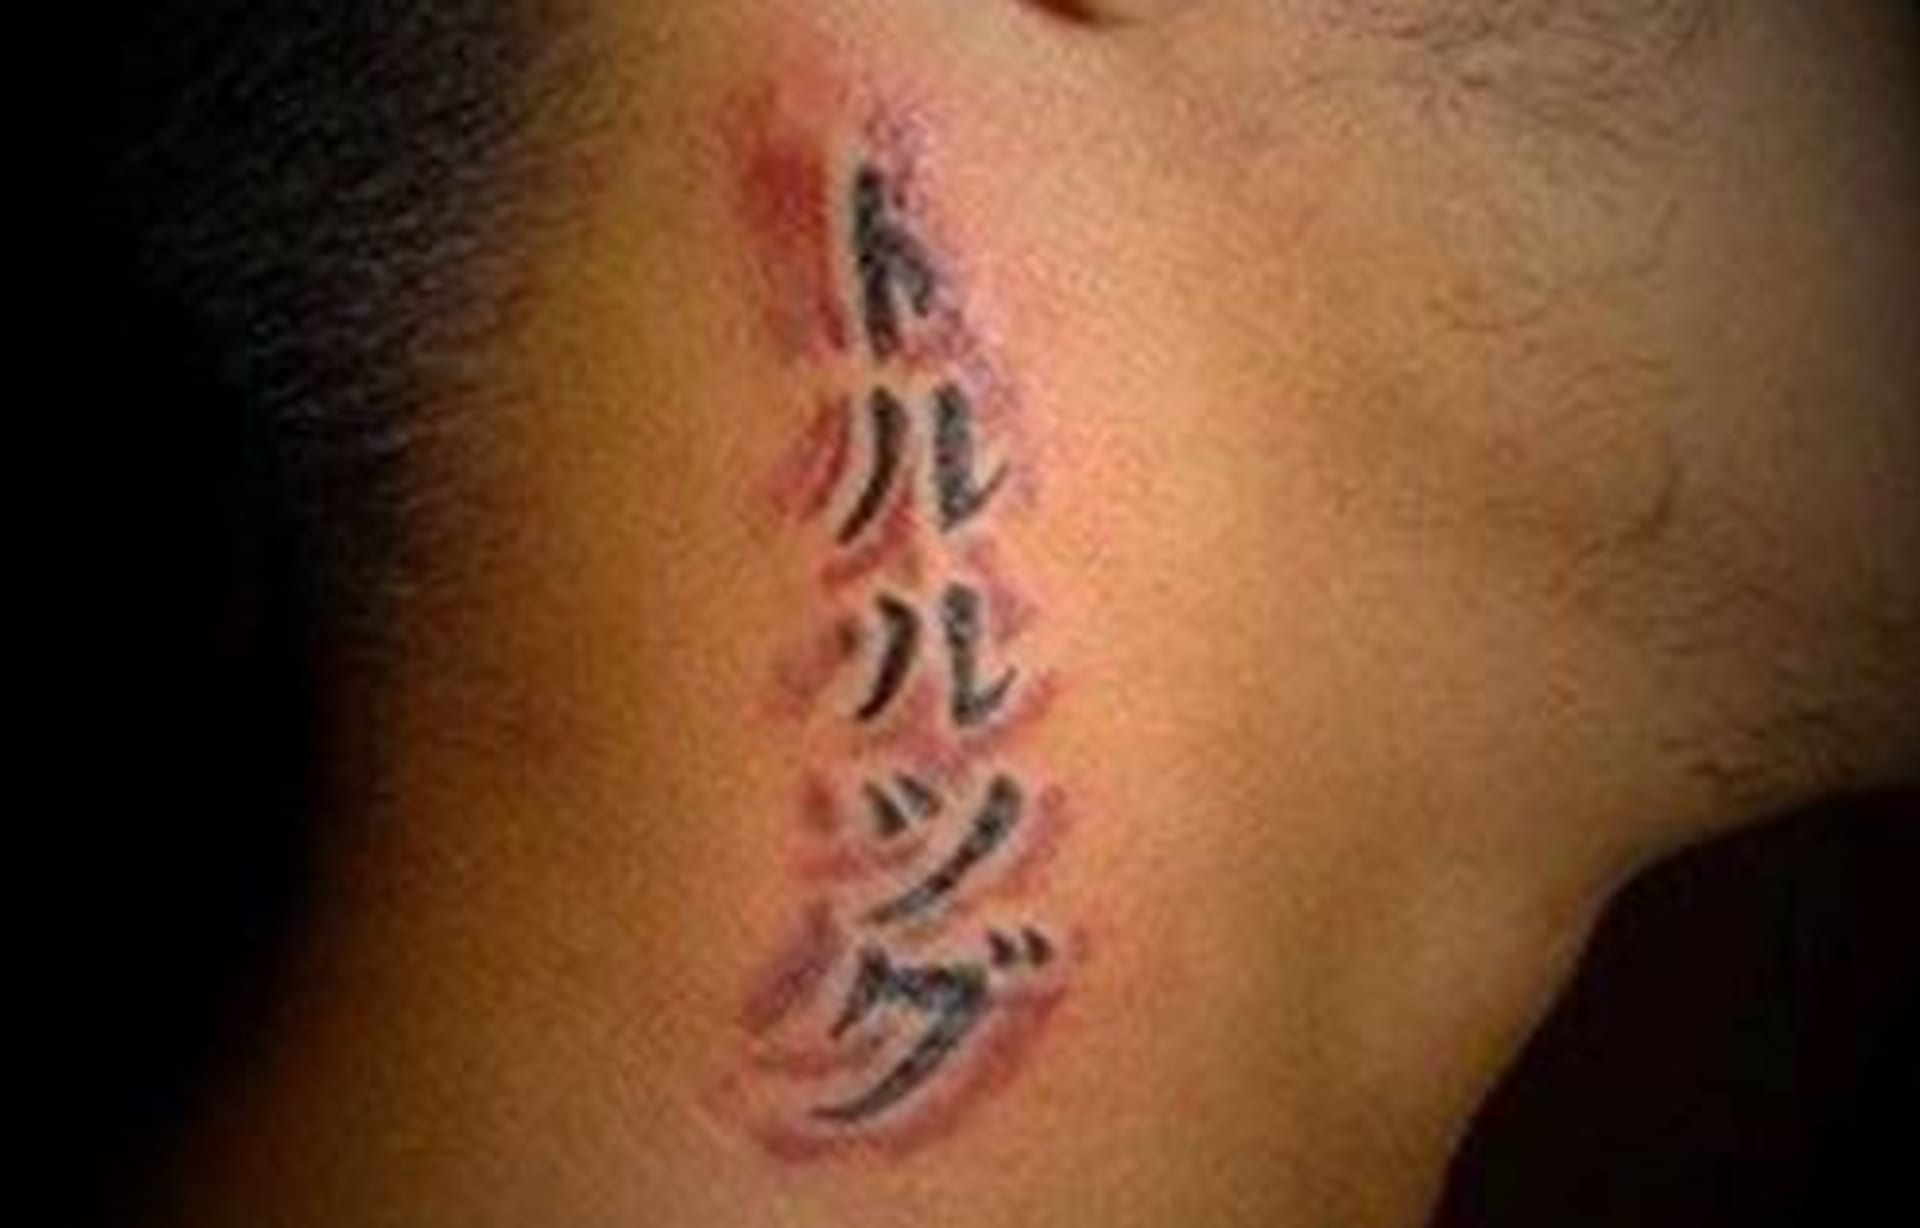 Ouha, tetování znamená něco jiného.